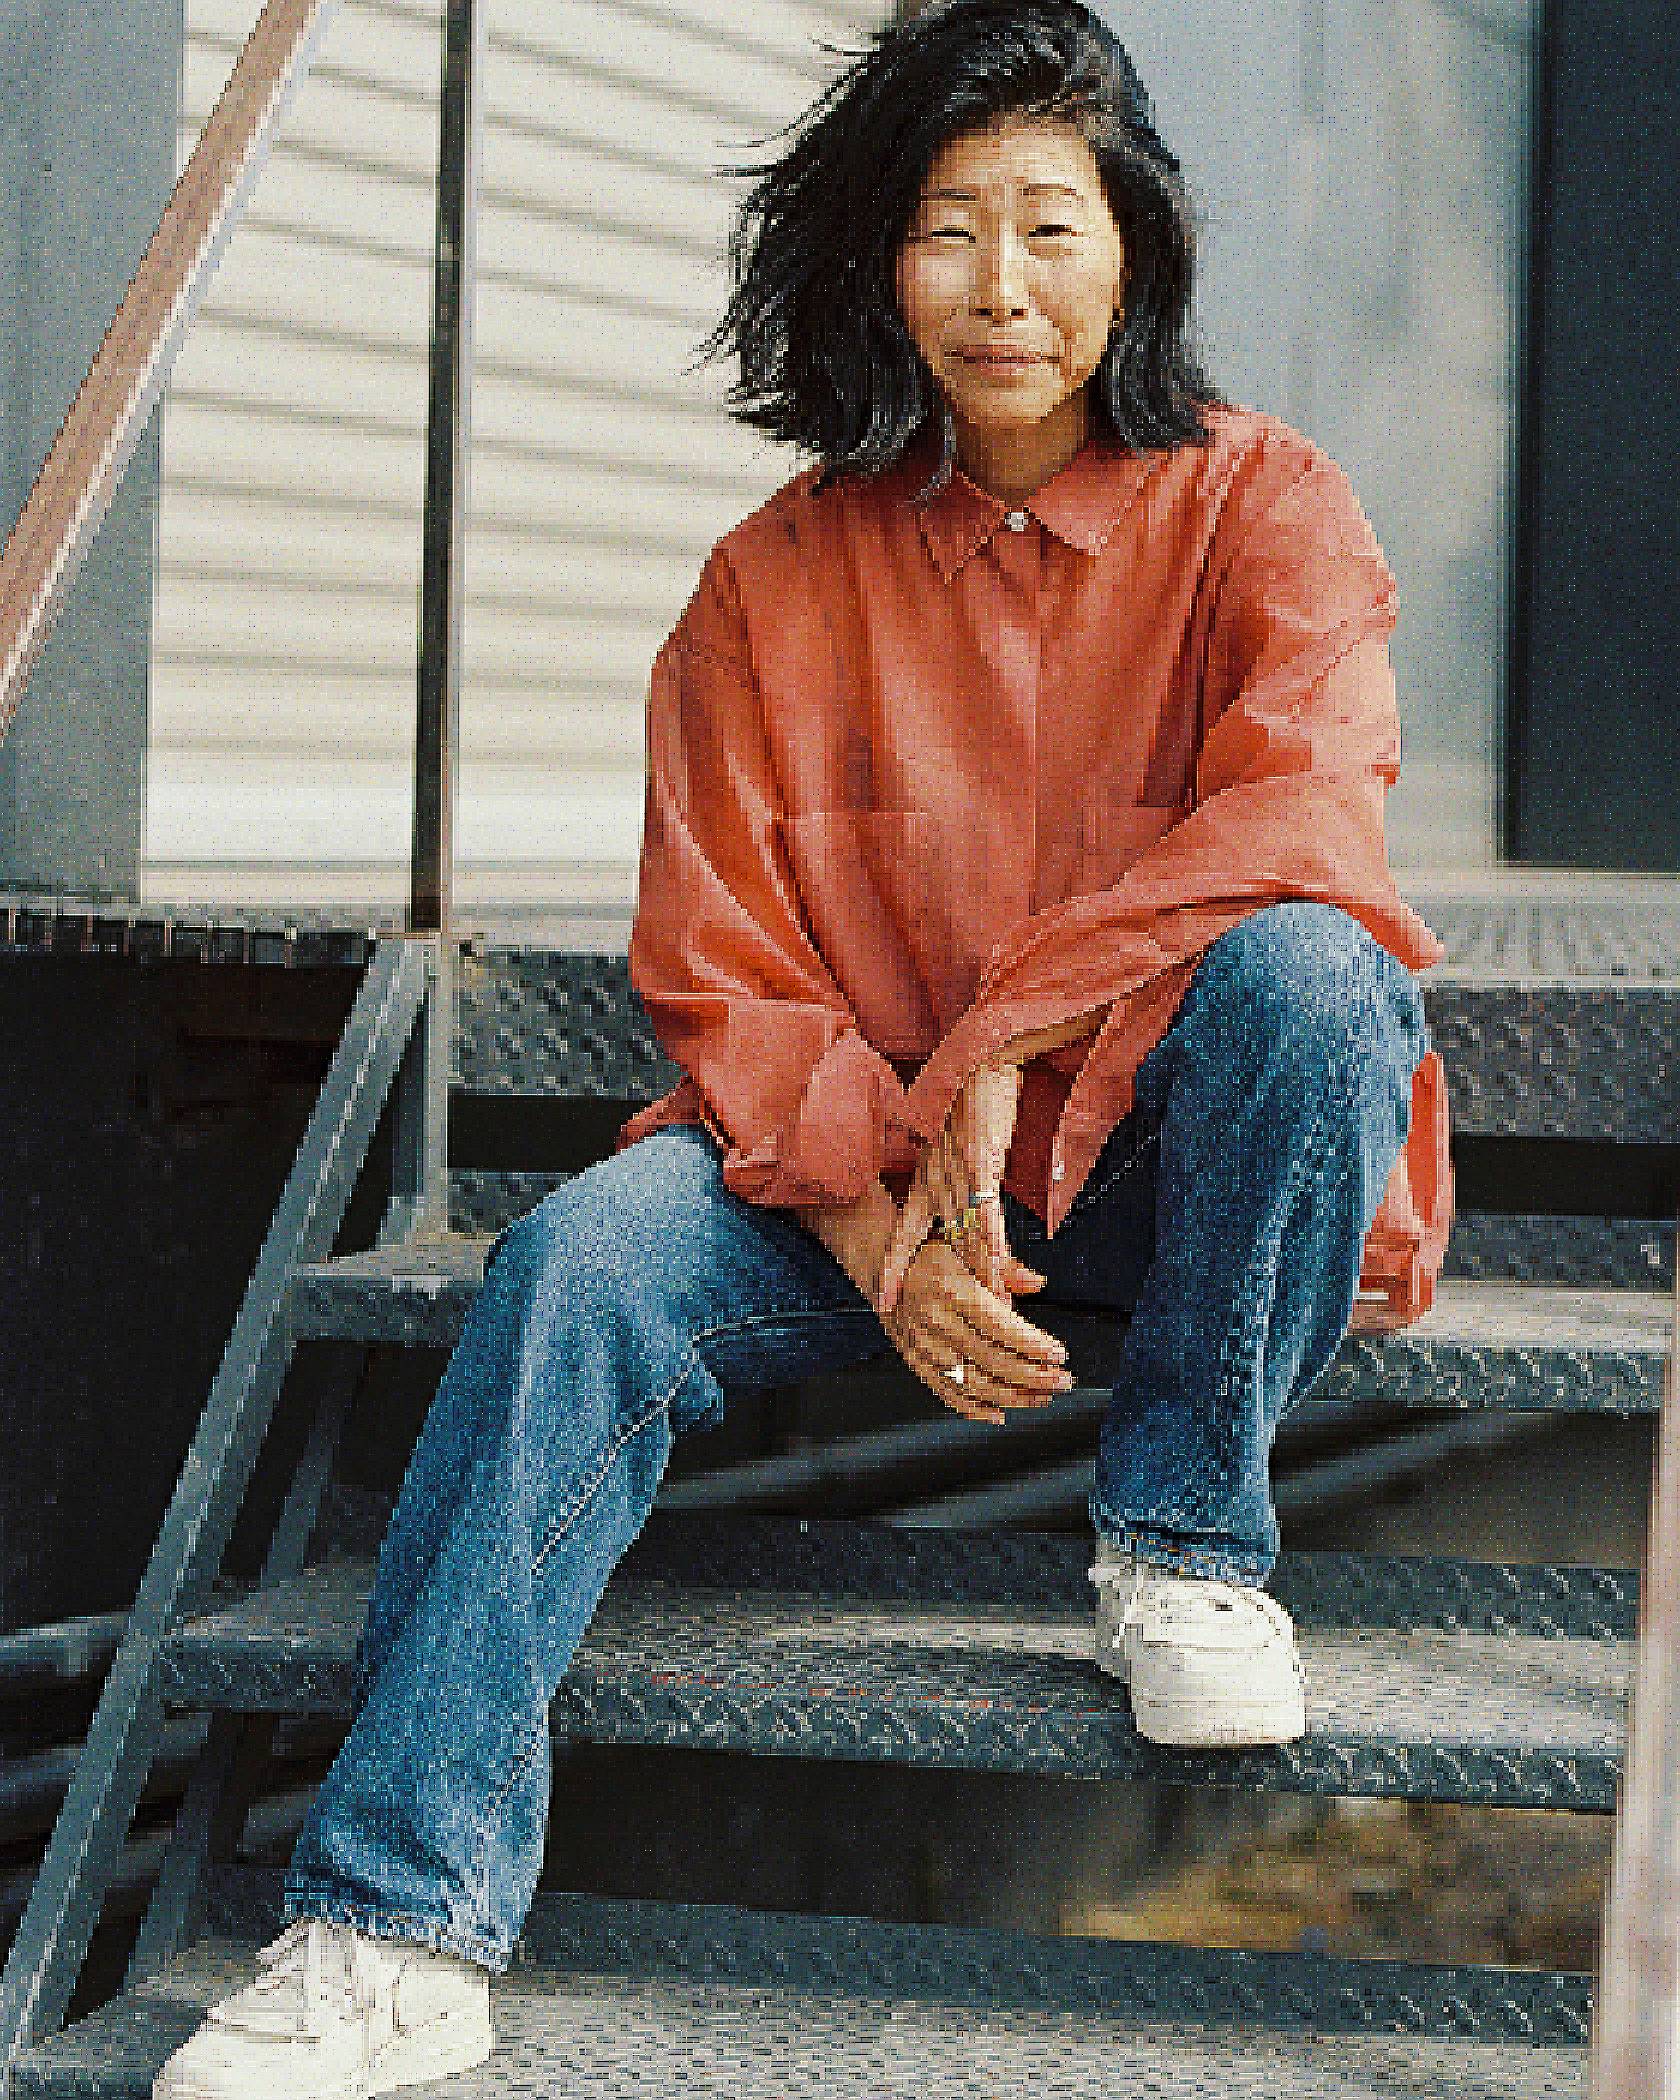 A portrait shot of KAEDE MATSUMOTO